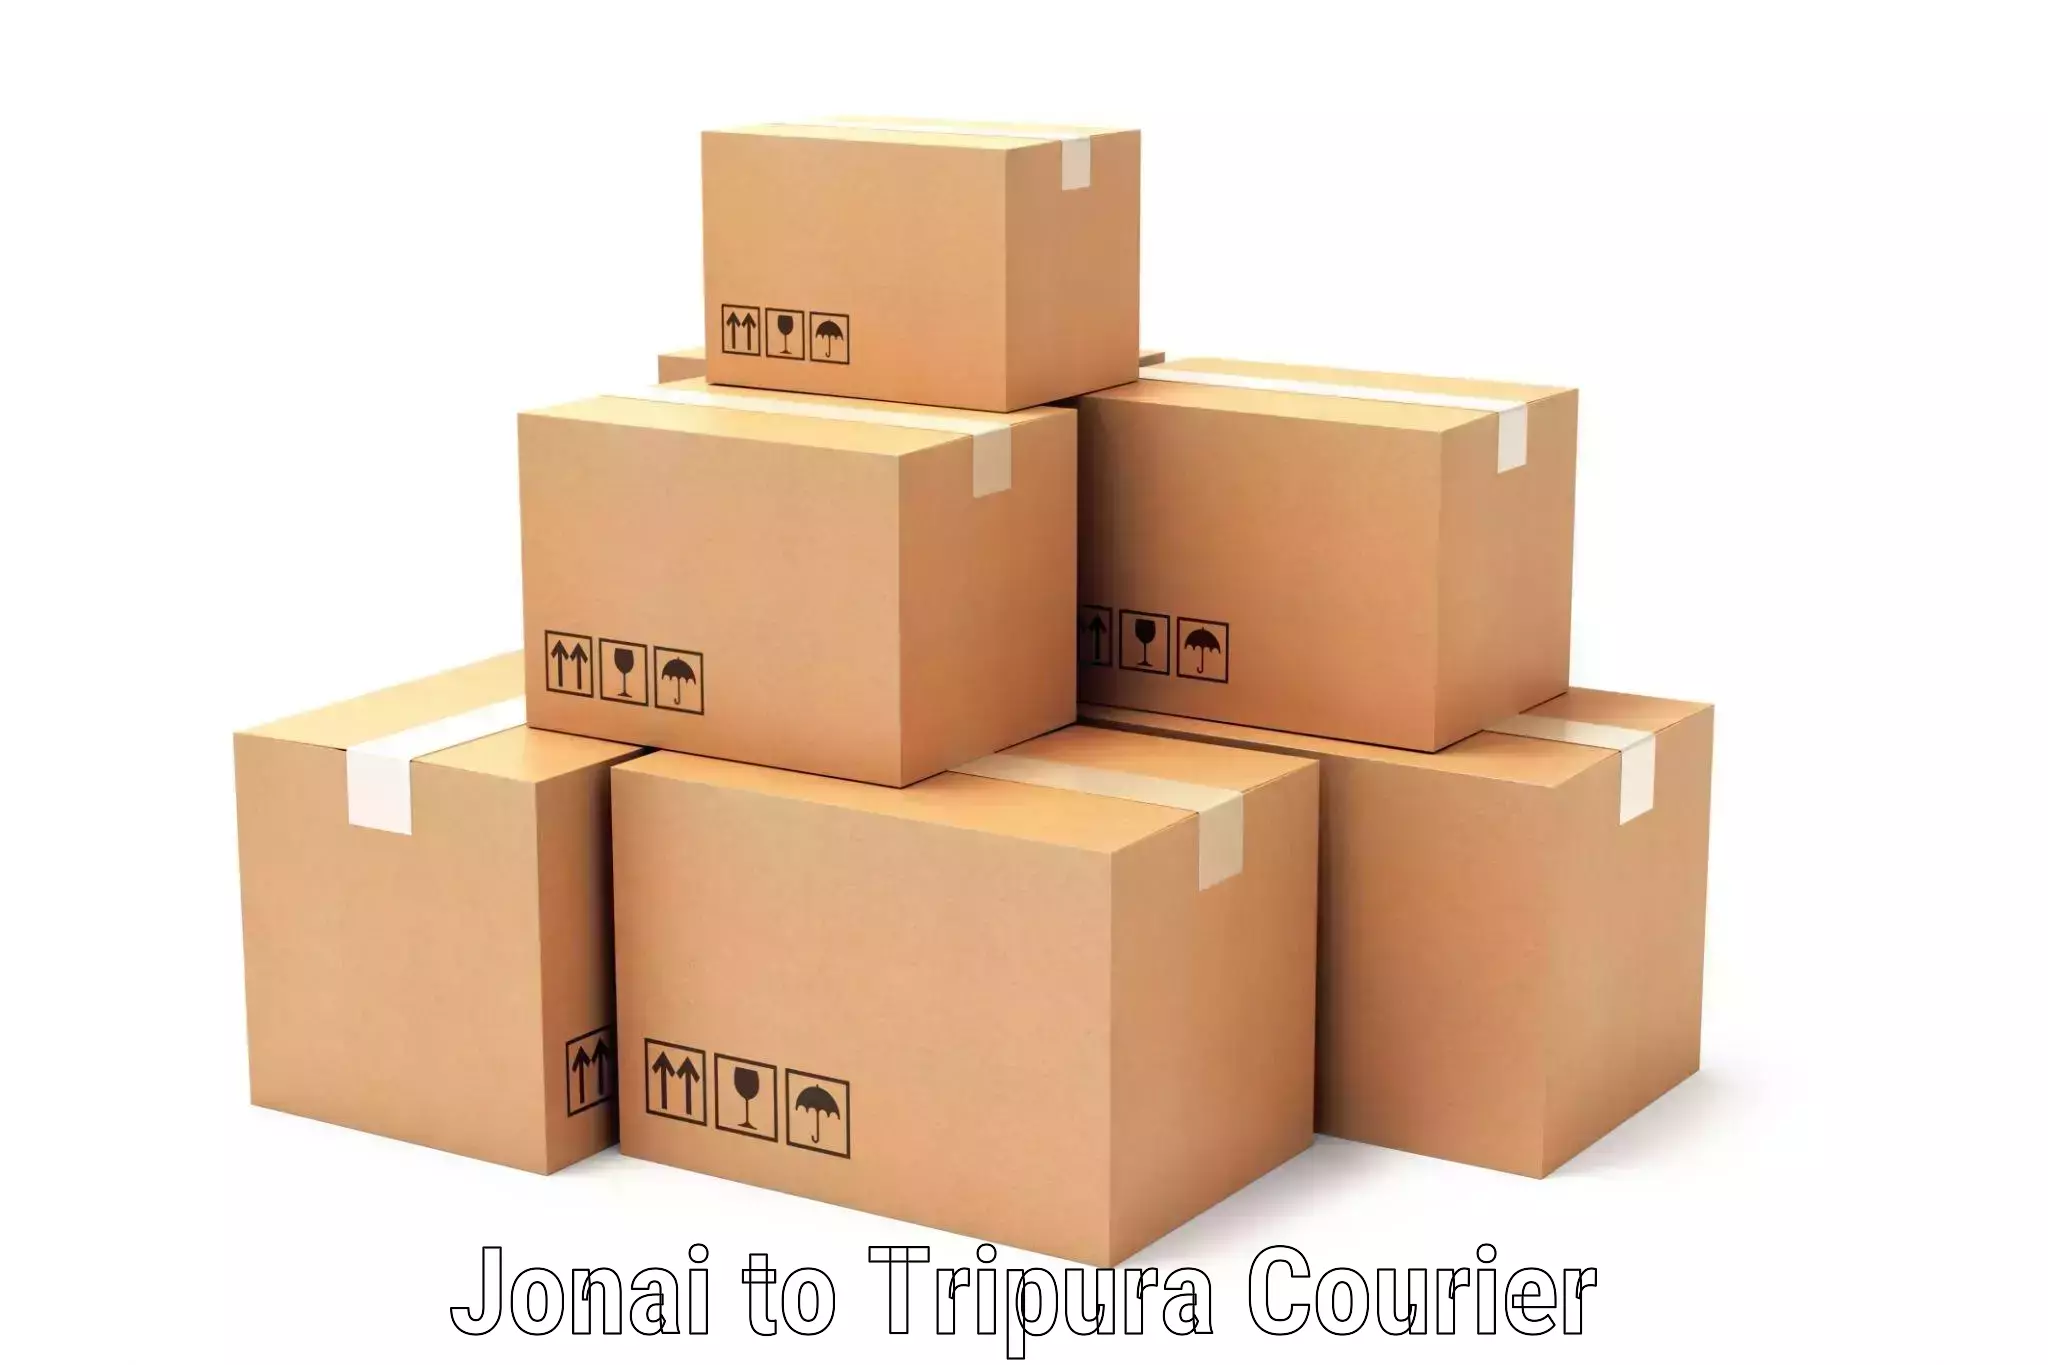 Courier service innovation Jonai to Sonamura